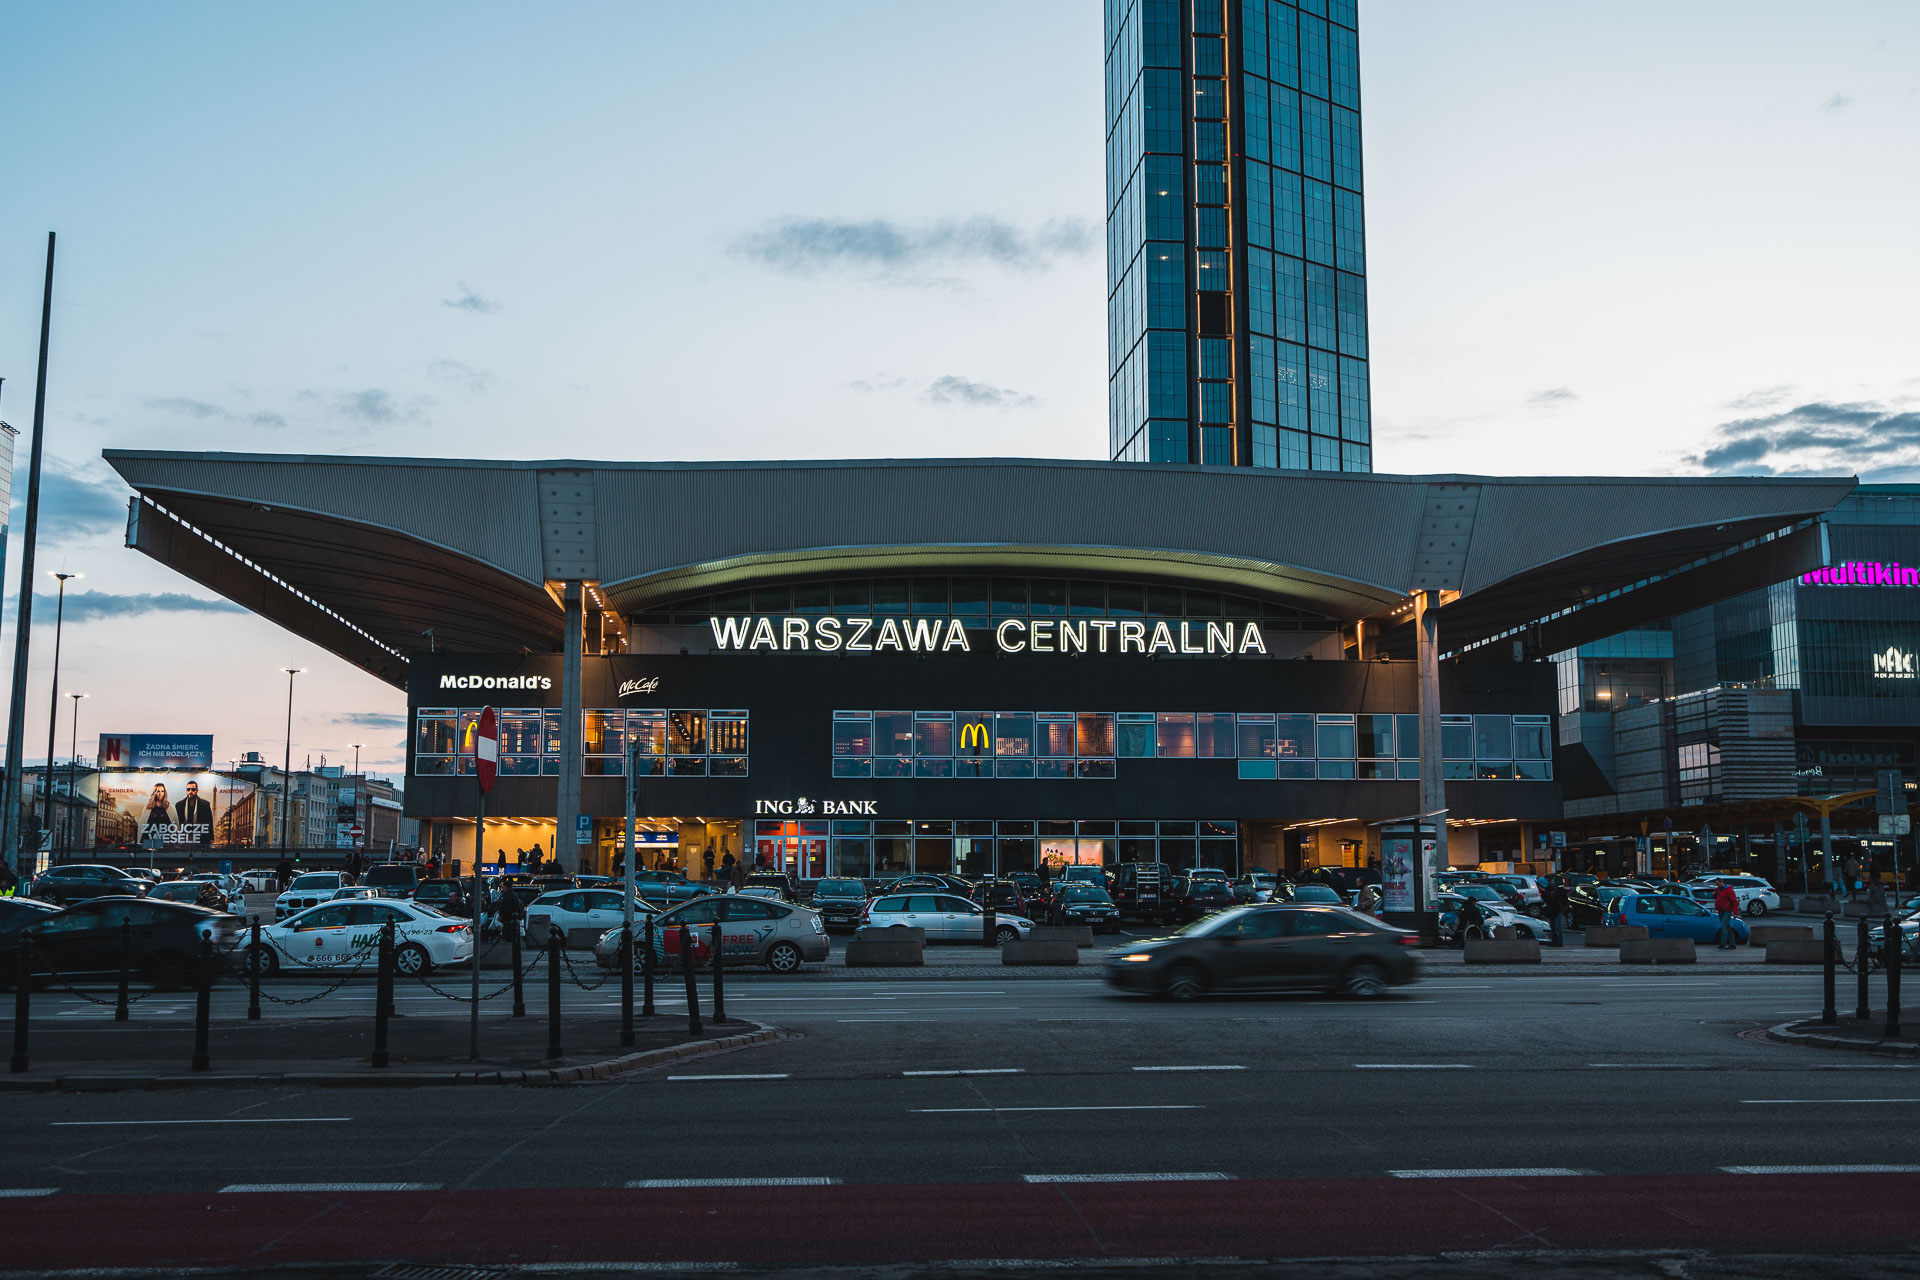 Warsaw central station after sunset